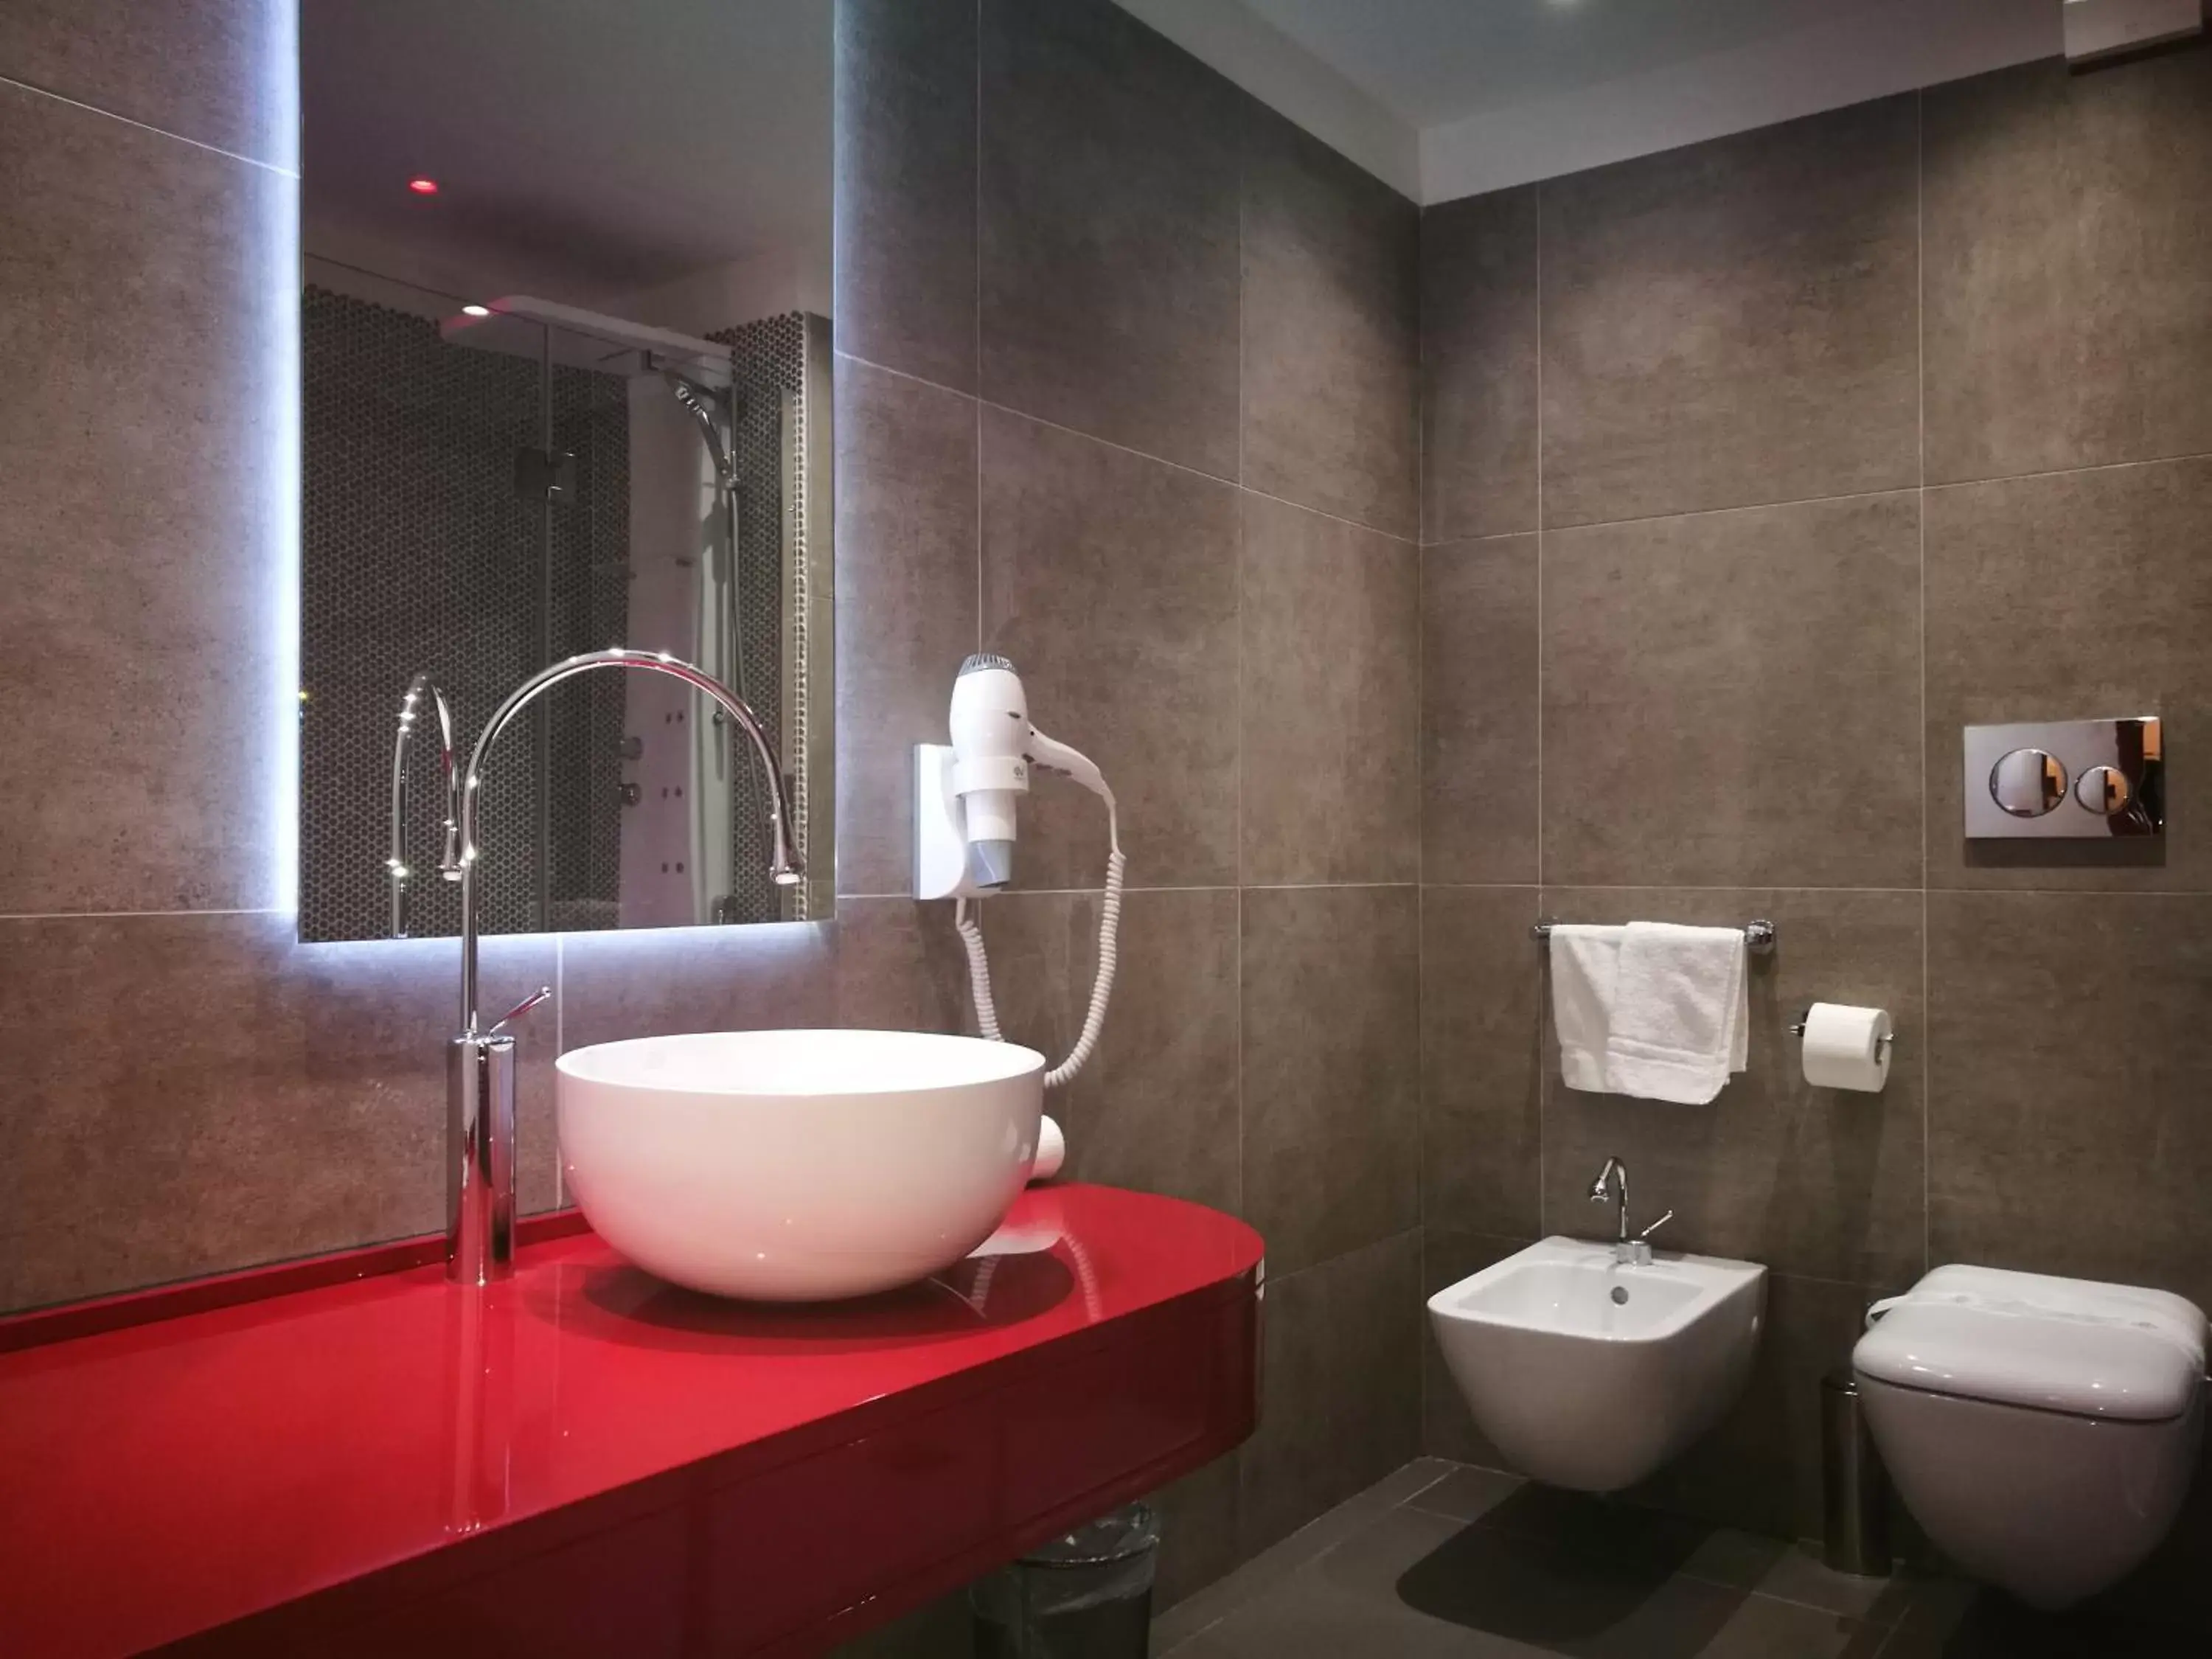 Bathroom in Hotel Santa Caterina Village Club